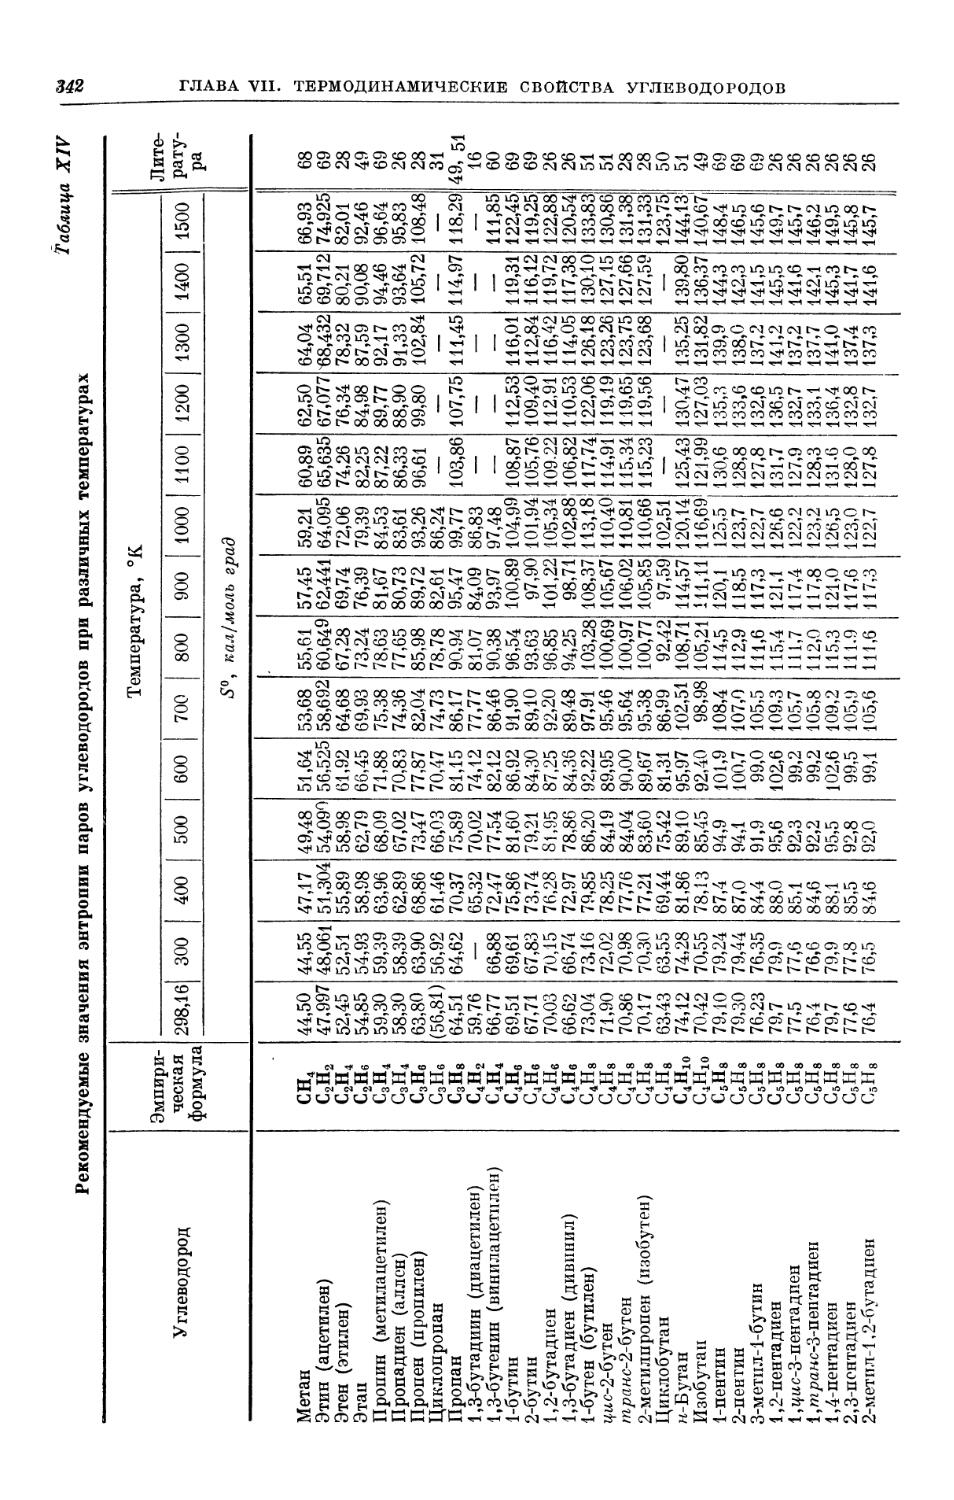 Таблица XIV. Энтропии паров углеводородов при различных температурах